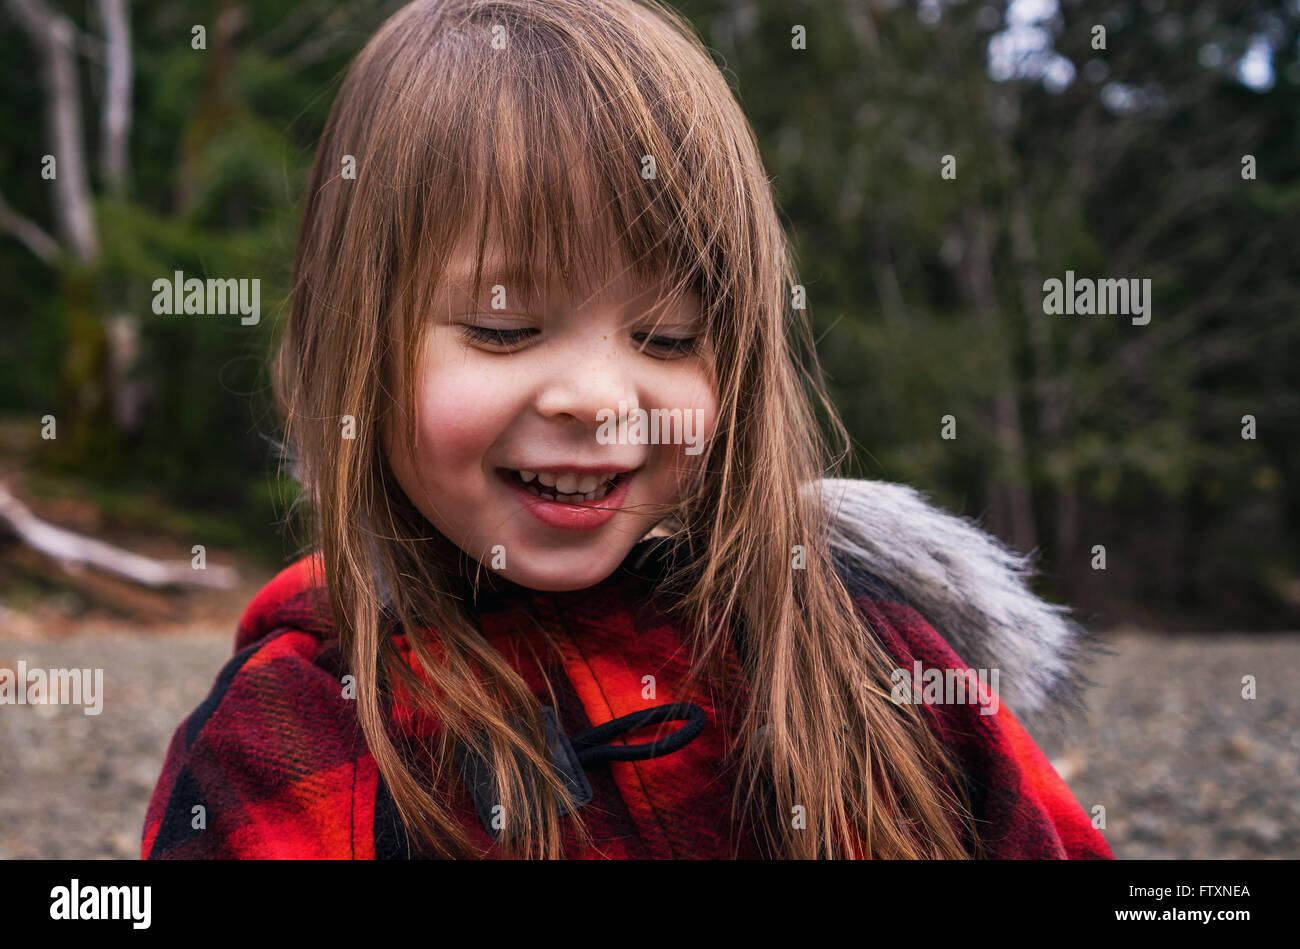 Retrato de una niña sonriente Foto de stock